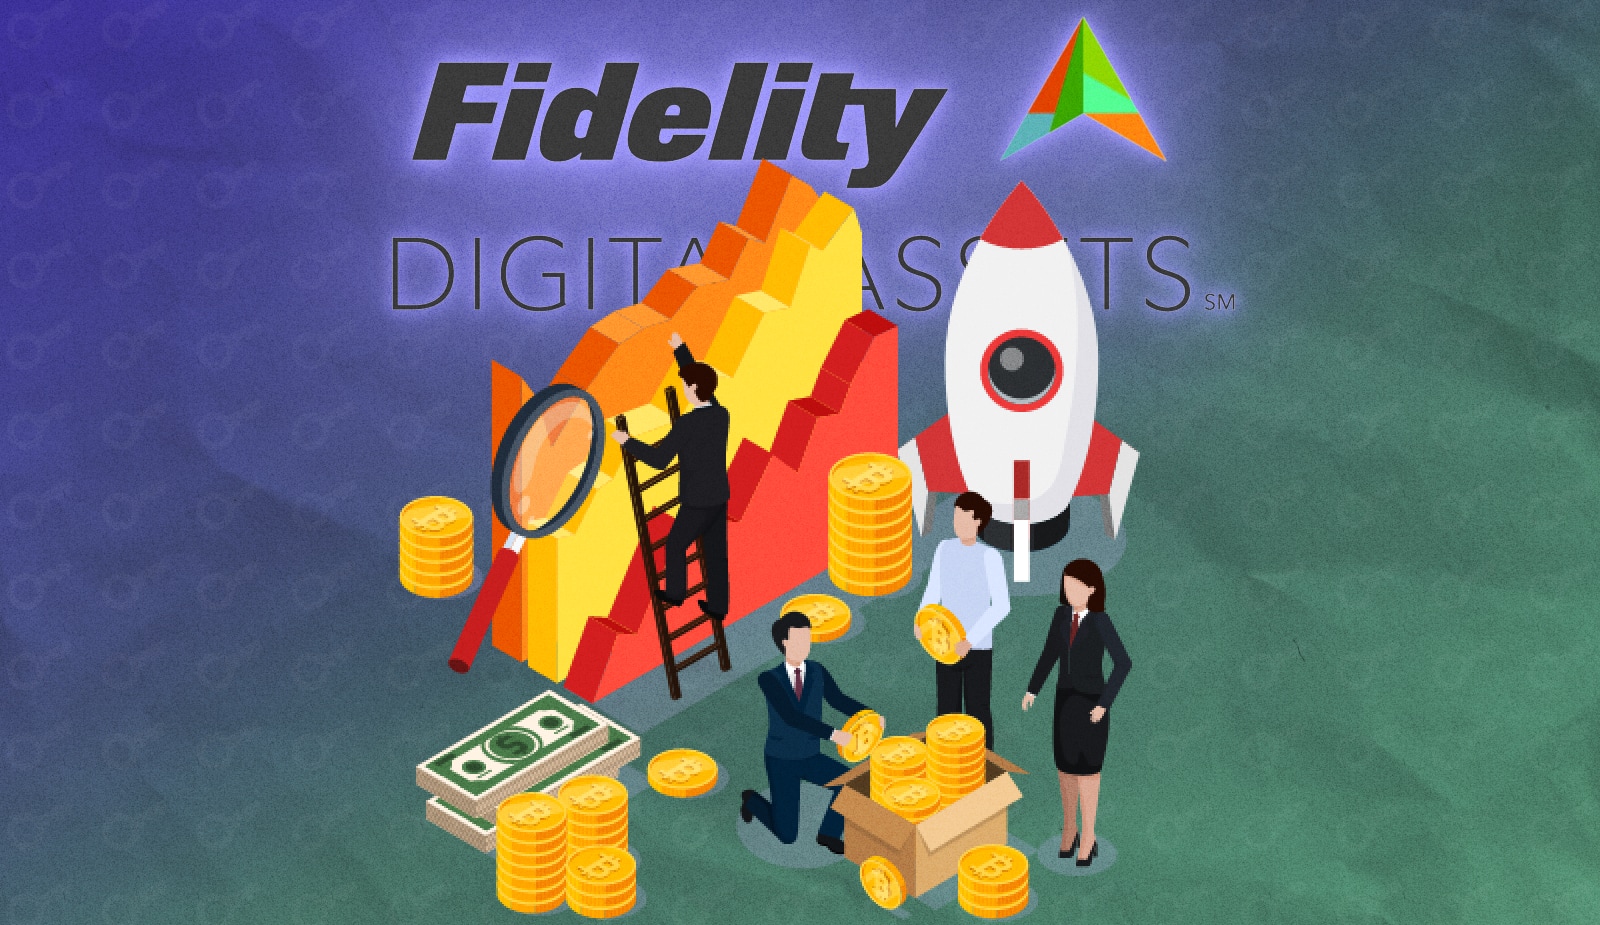 Fidelity збільшила штат криптовалютного підрозділу на 25%. Головний колаж новини.